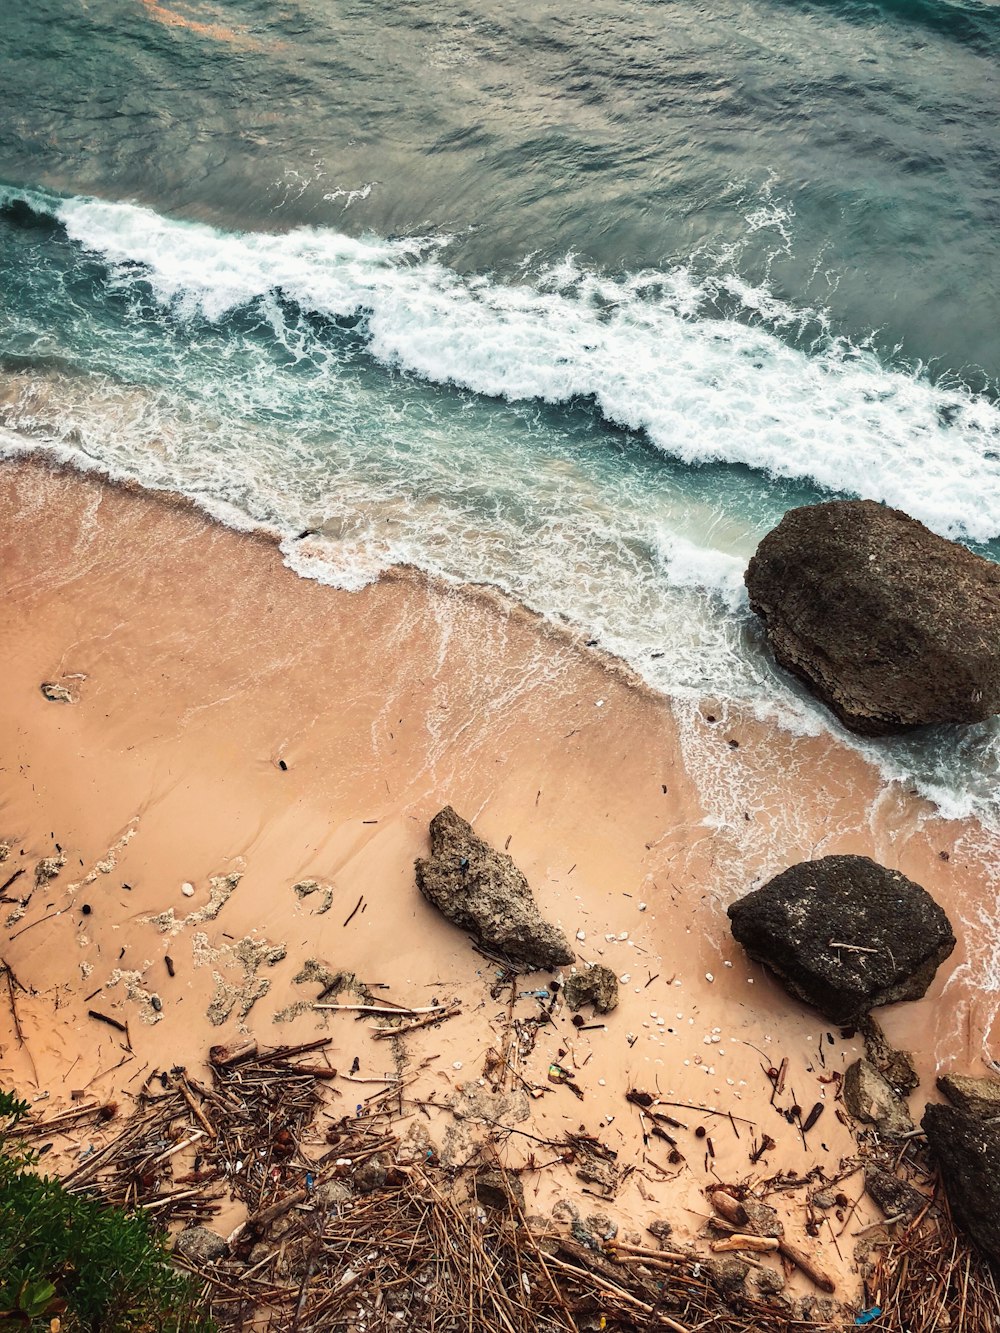 Photographie aérienne de roches et de bâtons de bois sur le rivage près de l’océan pendant la journée